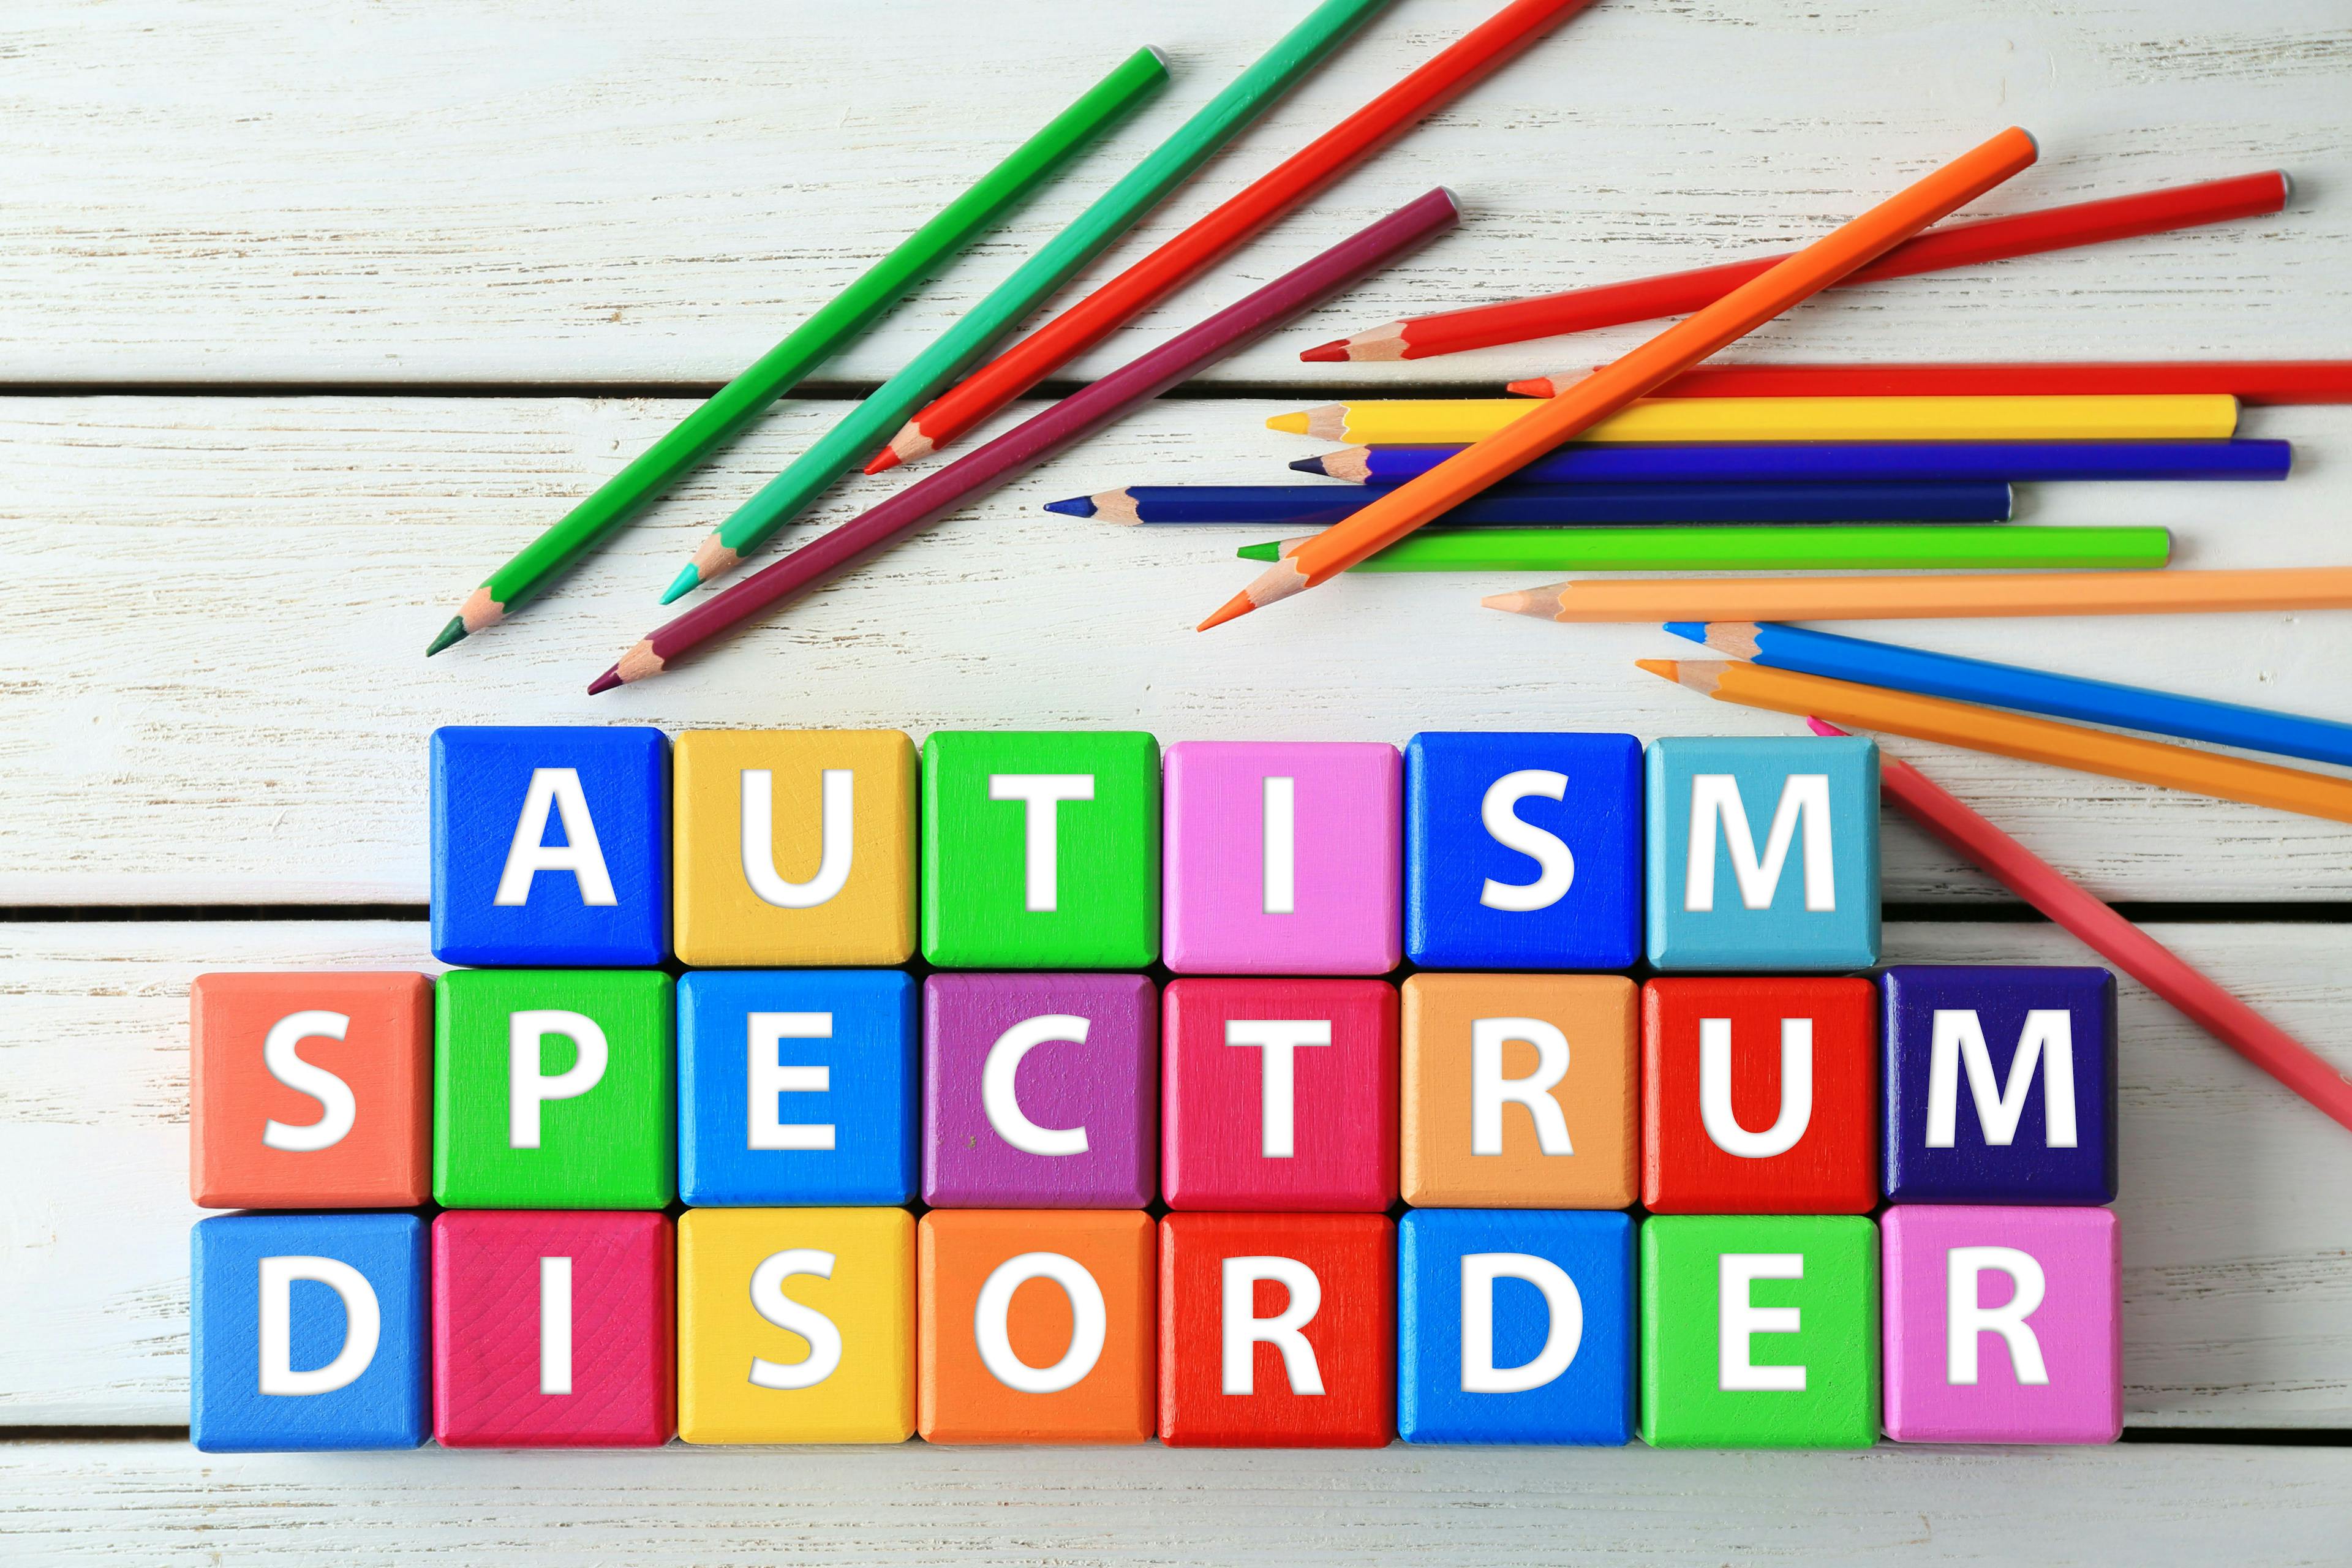 Autism spectrum disorder | Image Credit: © Africa Studio - © Africa Studio - stock.adobe.com.